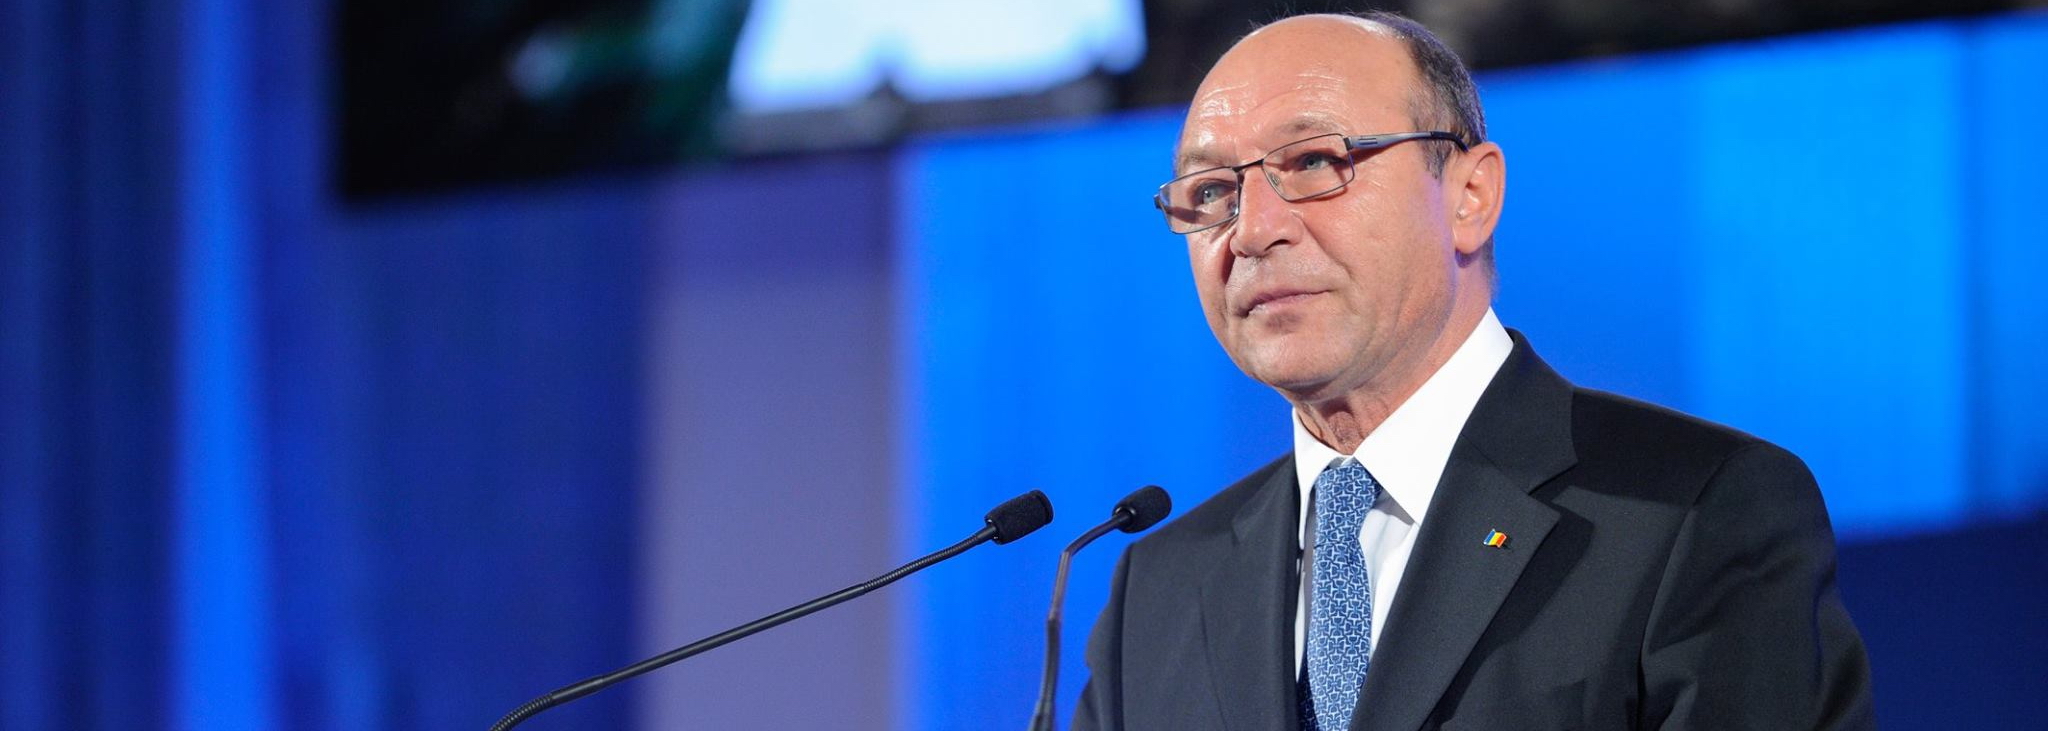 Traian Basescu a redevenit presedinte, insa doar de partid. Ce spune Vasile Blaga despre o posibila colaborare PNL-MP